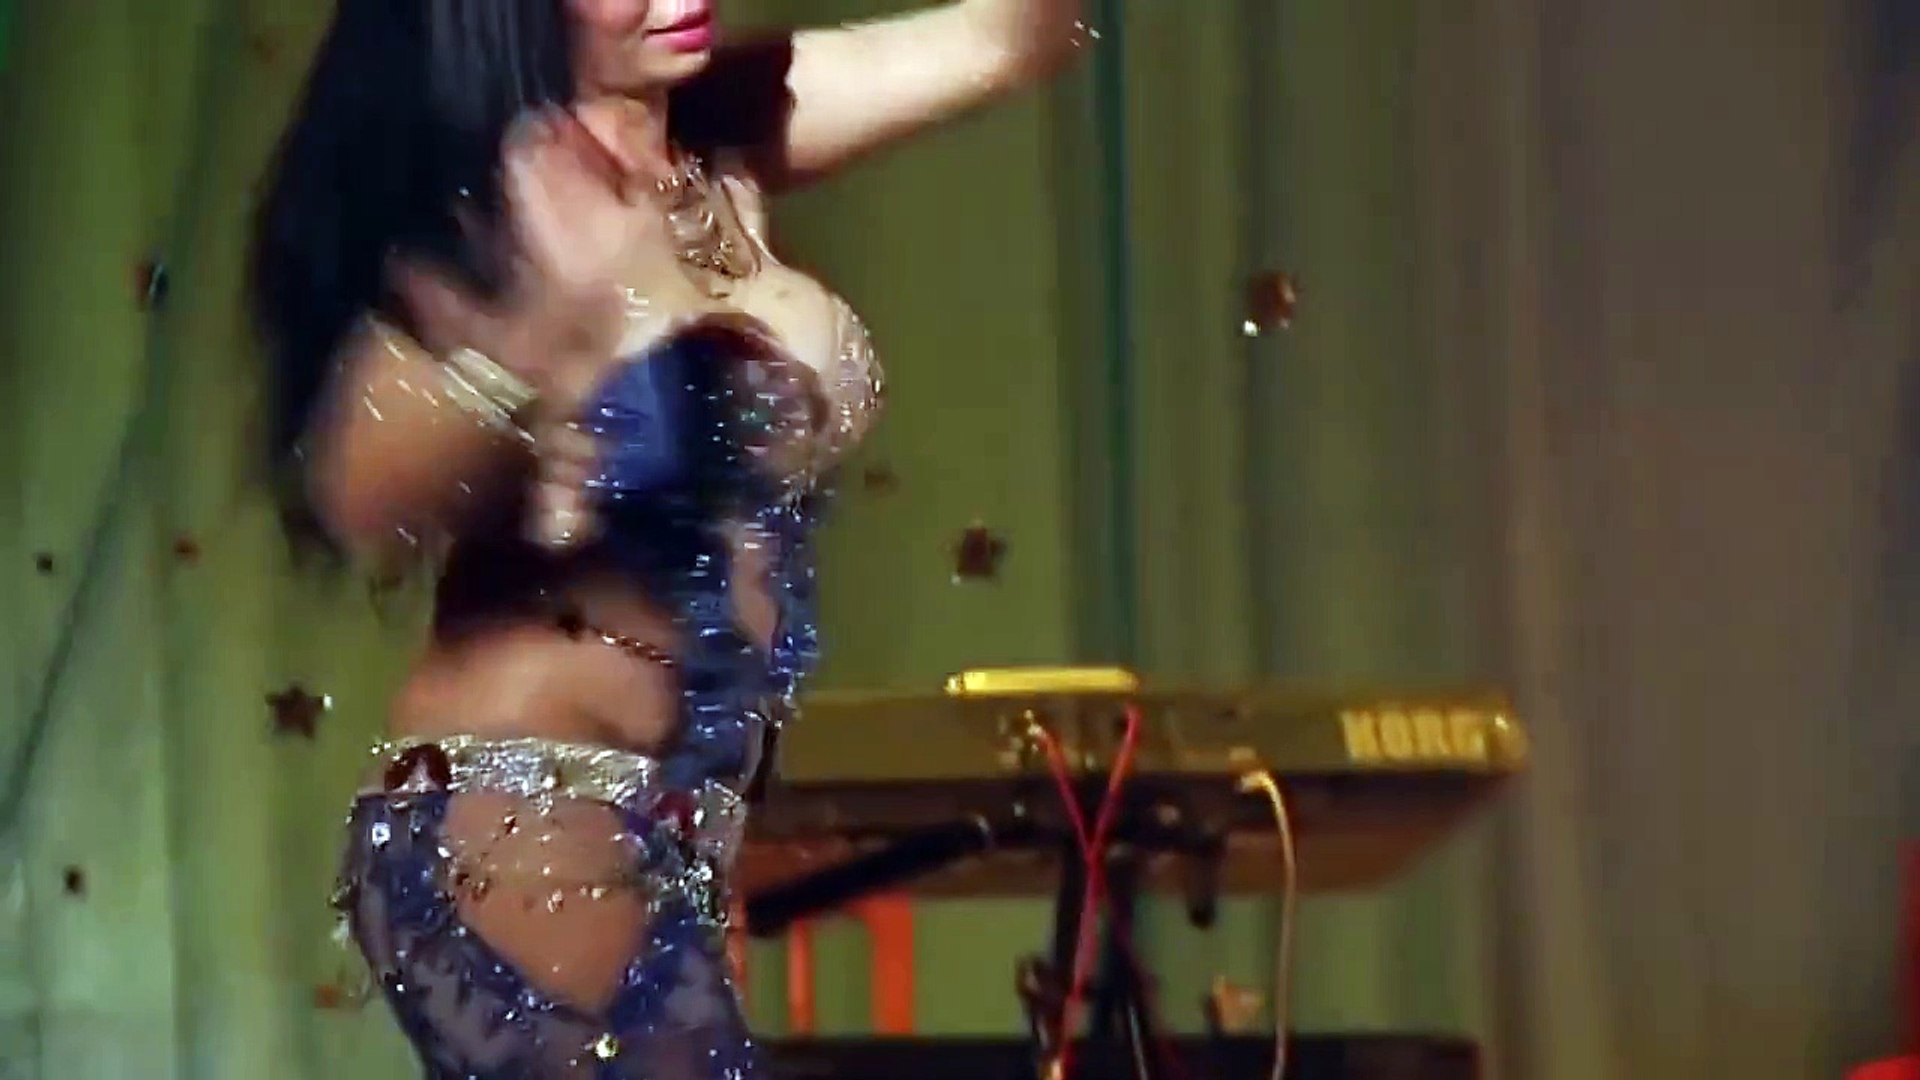 مش صافيناز .رقص شرقي مصري .Hot Belly Dance - video Dailymotion